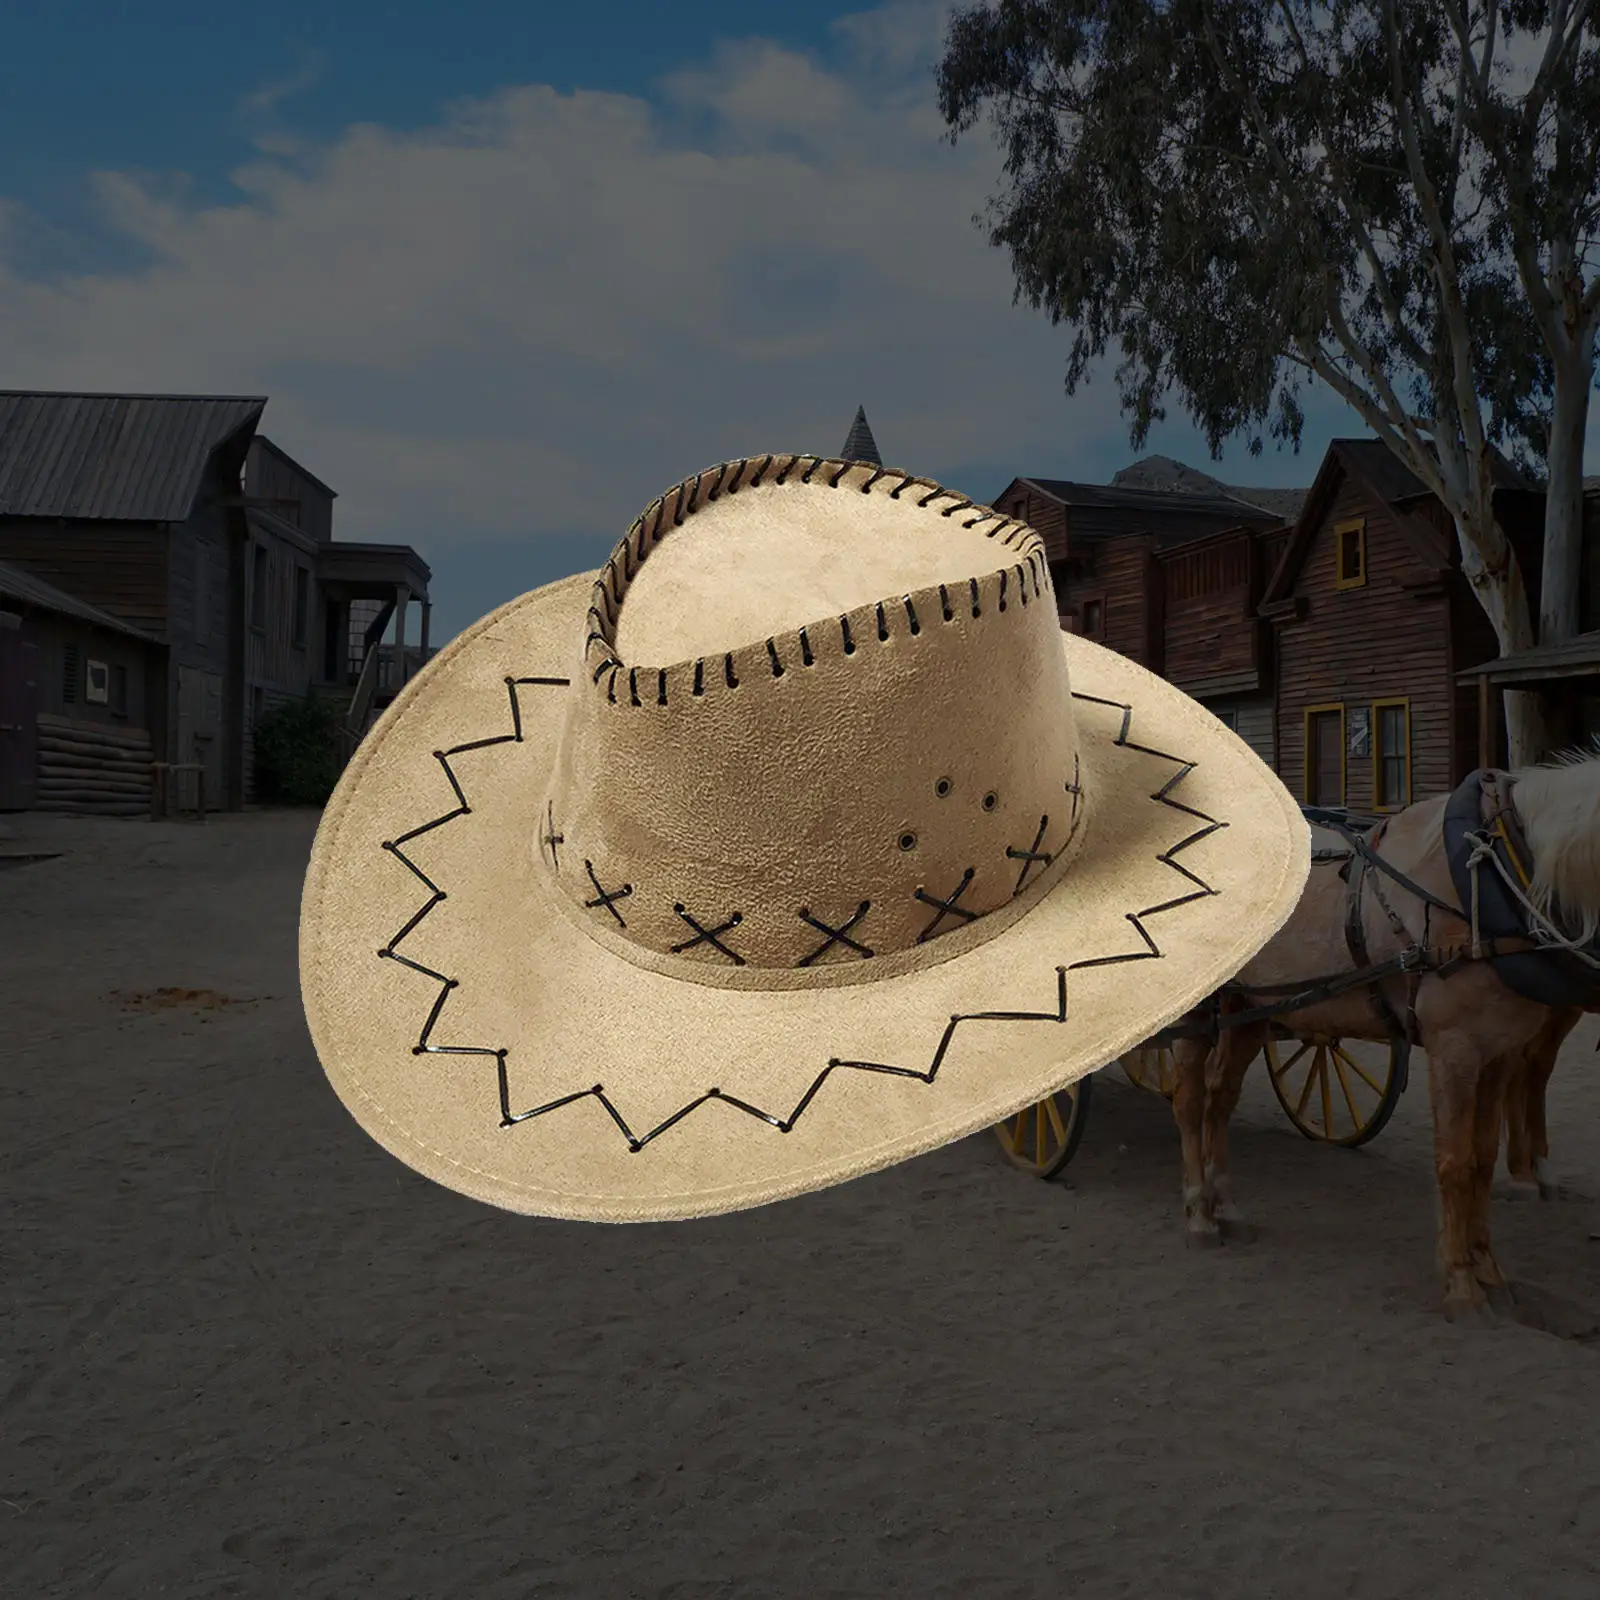 Western Cowboy Hat For Gentleman Cowgirl Jazz With Gentleman Suede Sombrero 